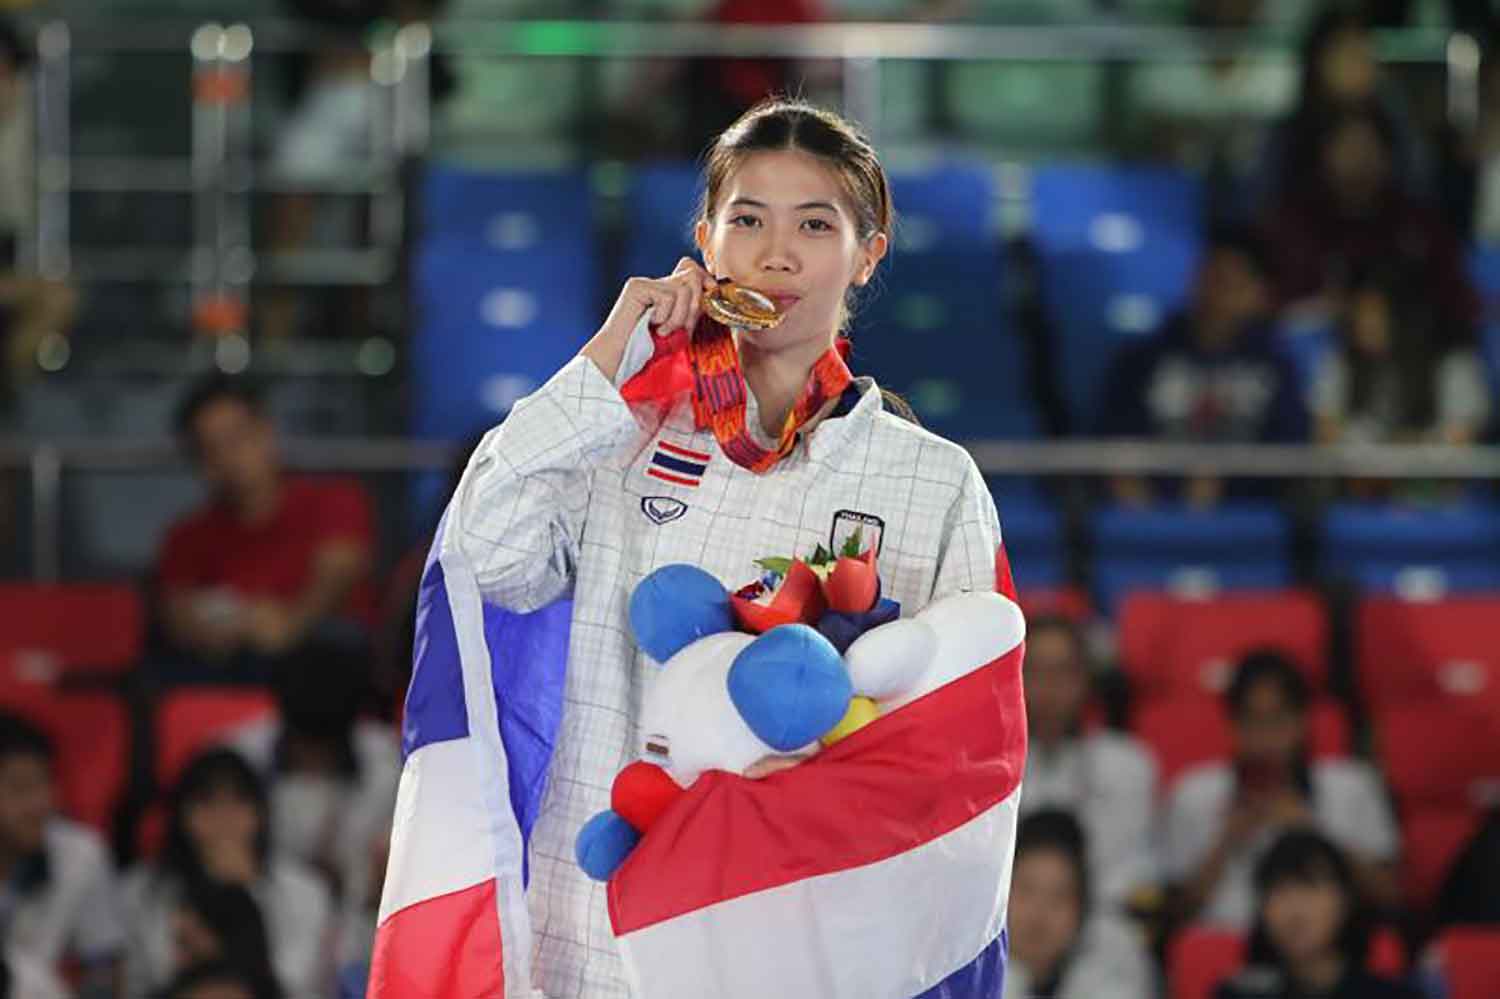 Đội tuyển Taekwondo Thái Lan tự lo chi phí dù được miễn phí ăn ở - Ảnh 1.